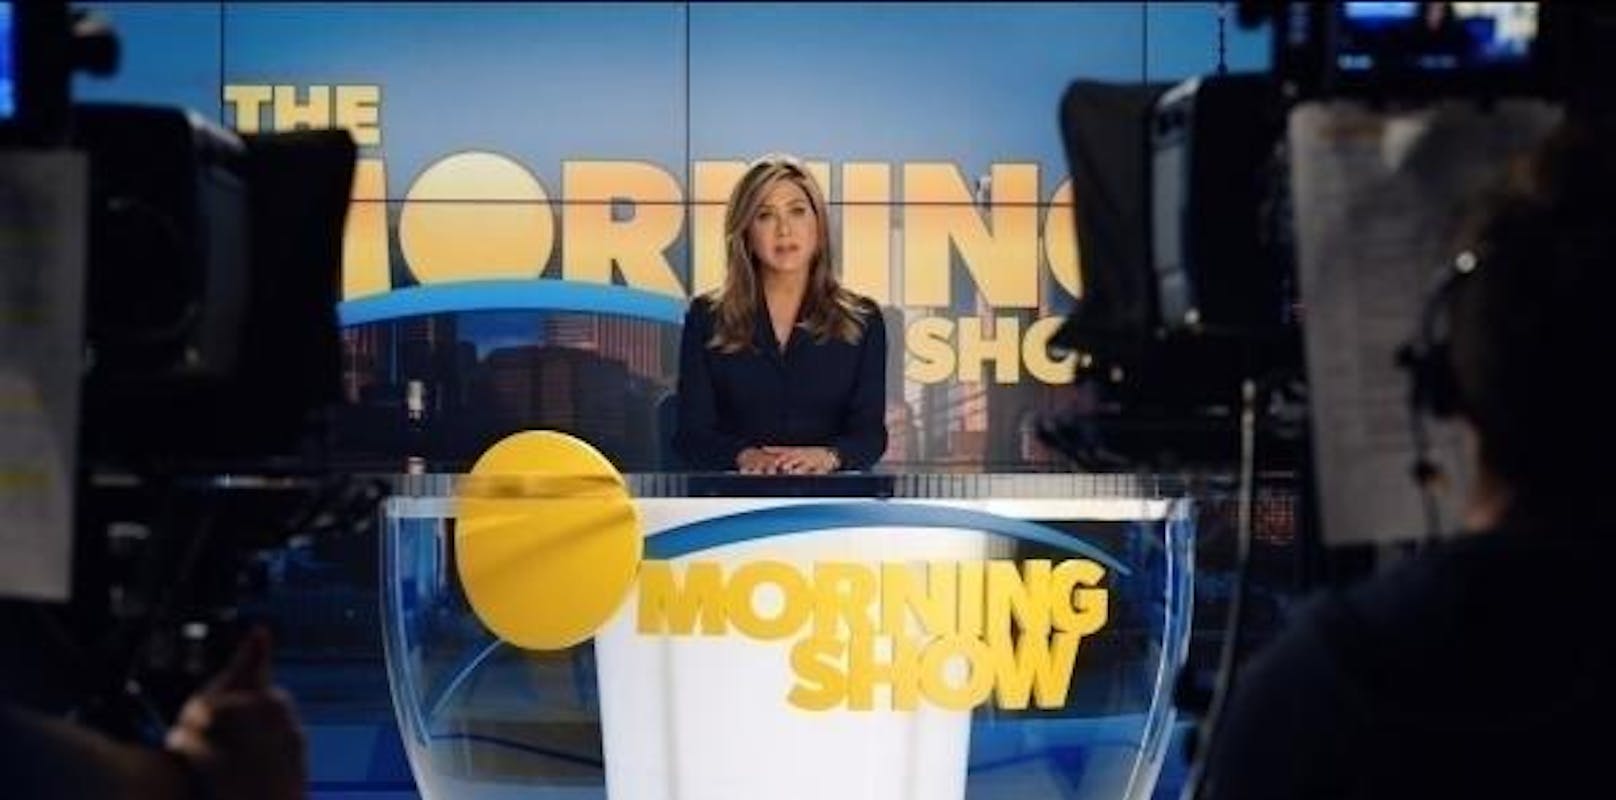 Eine weitere Eigenproduktion ist "The Morning Show" mit Jennifer Anniston, Reese Witherspoon und Steve Carell. Apple bezeichnet die Serie als ein mörderisches Drama in der Welt der Morgennachrichten.